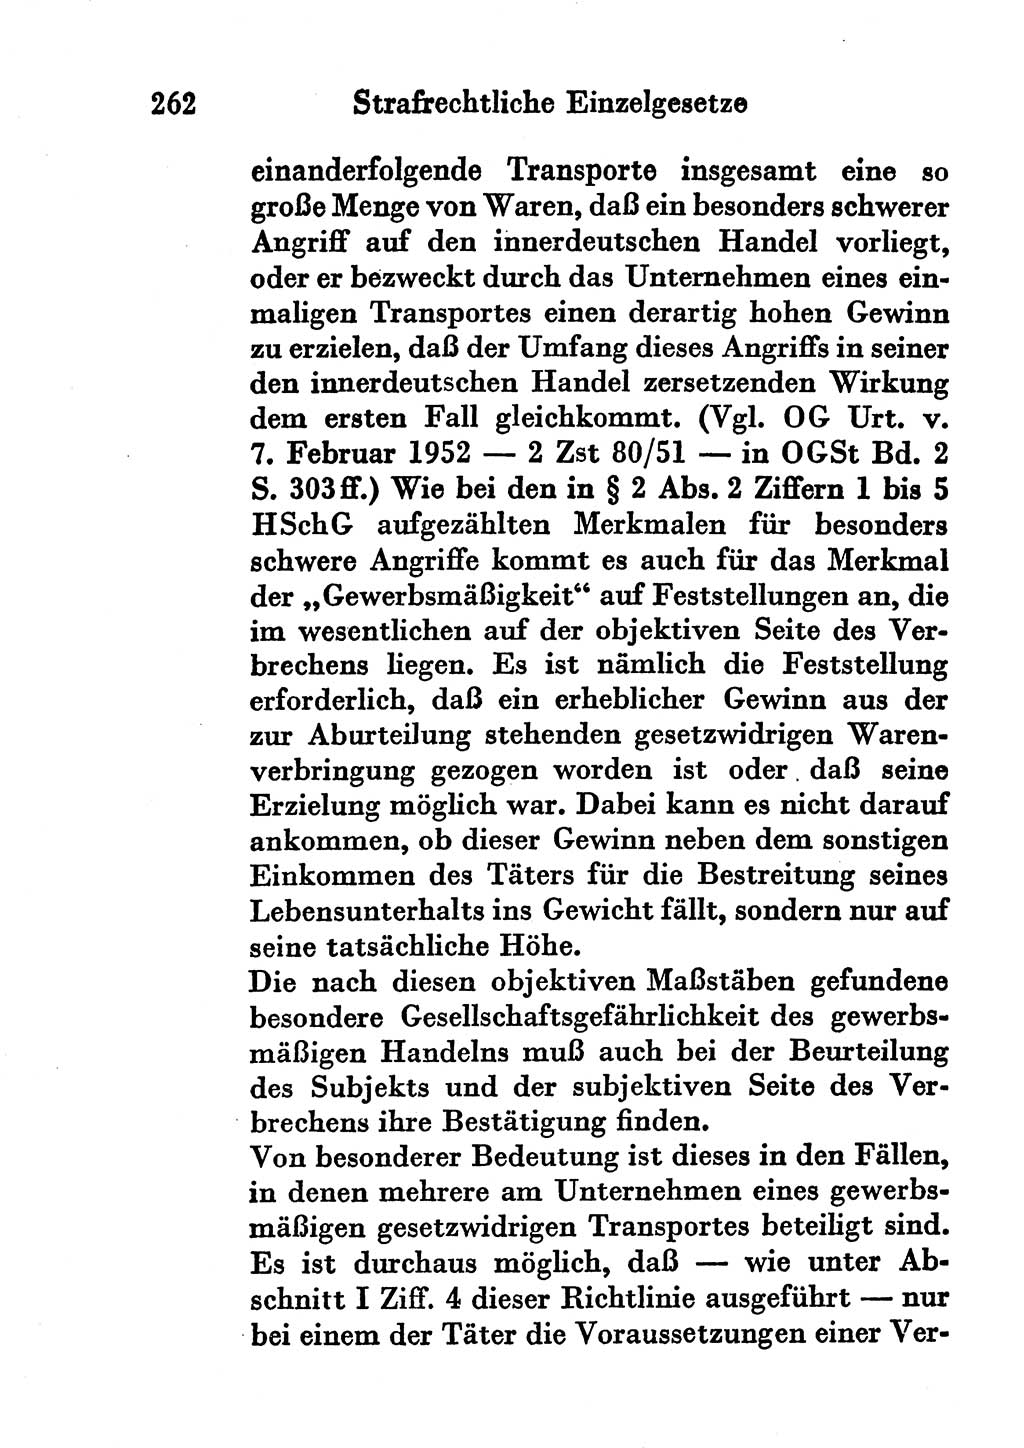 Strafgesetzbuch (StGB) und andere Strafgesetze [Deutsche Demokratische Republik (DDR)] 1956, Seite 262 (StGB Strafges. DDR 1956, S. 262)